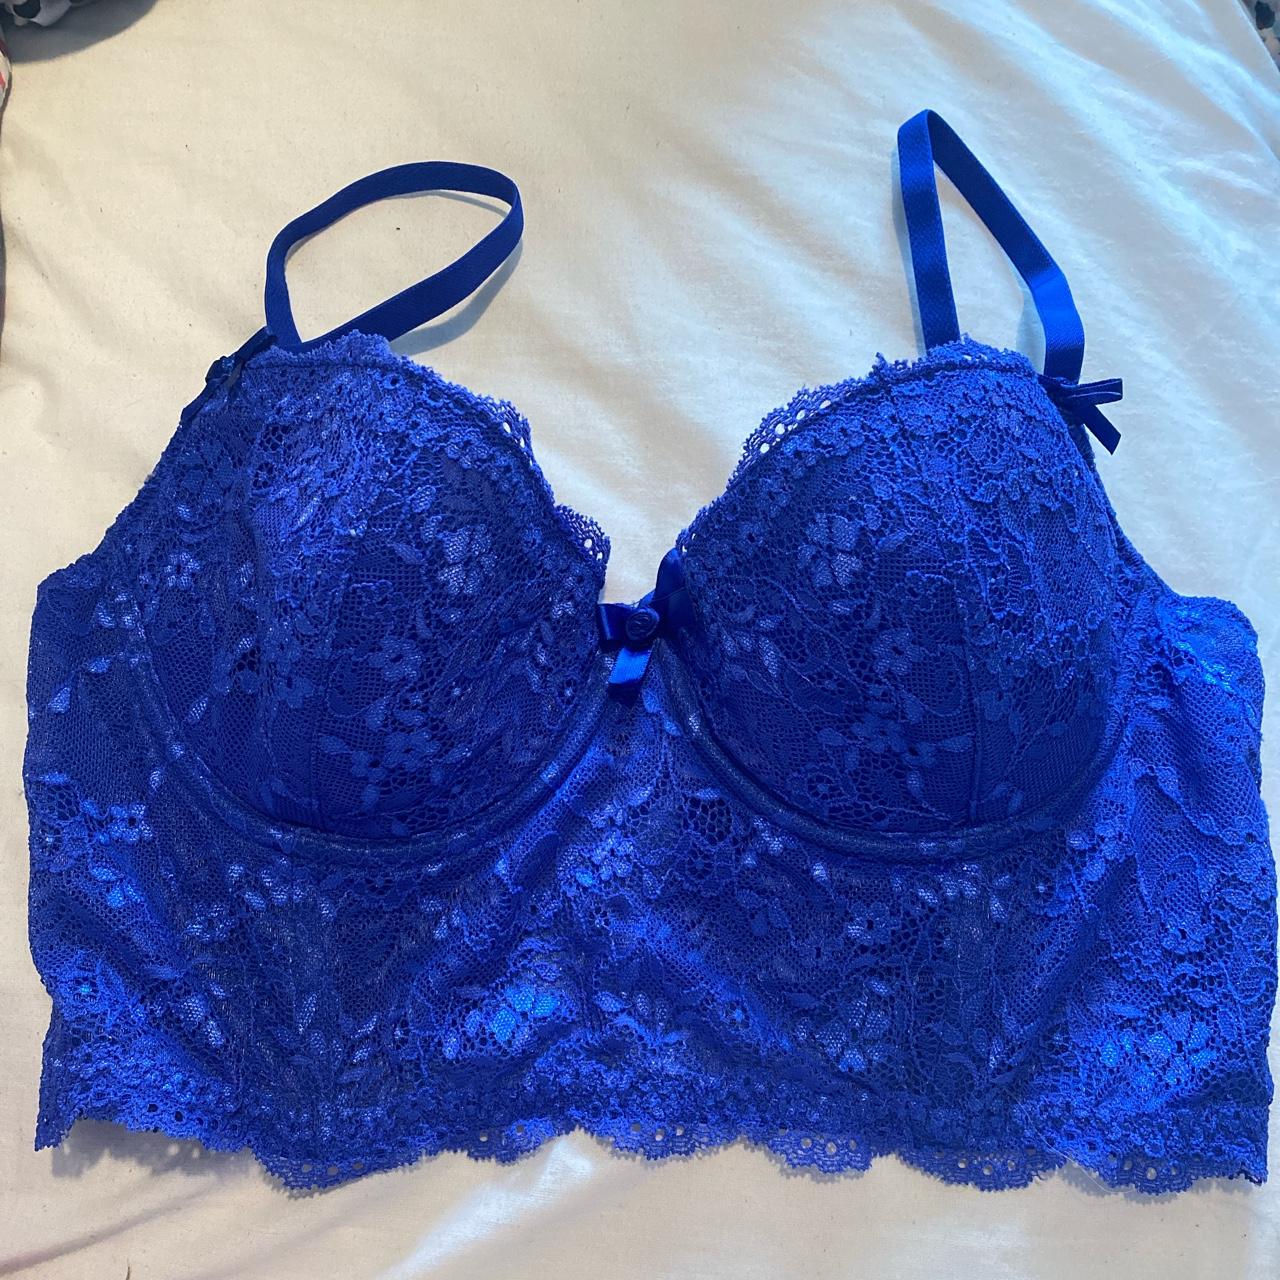 Boux avenue royal blue lace longline bra. Size 32D. - Depop